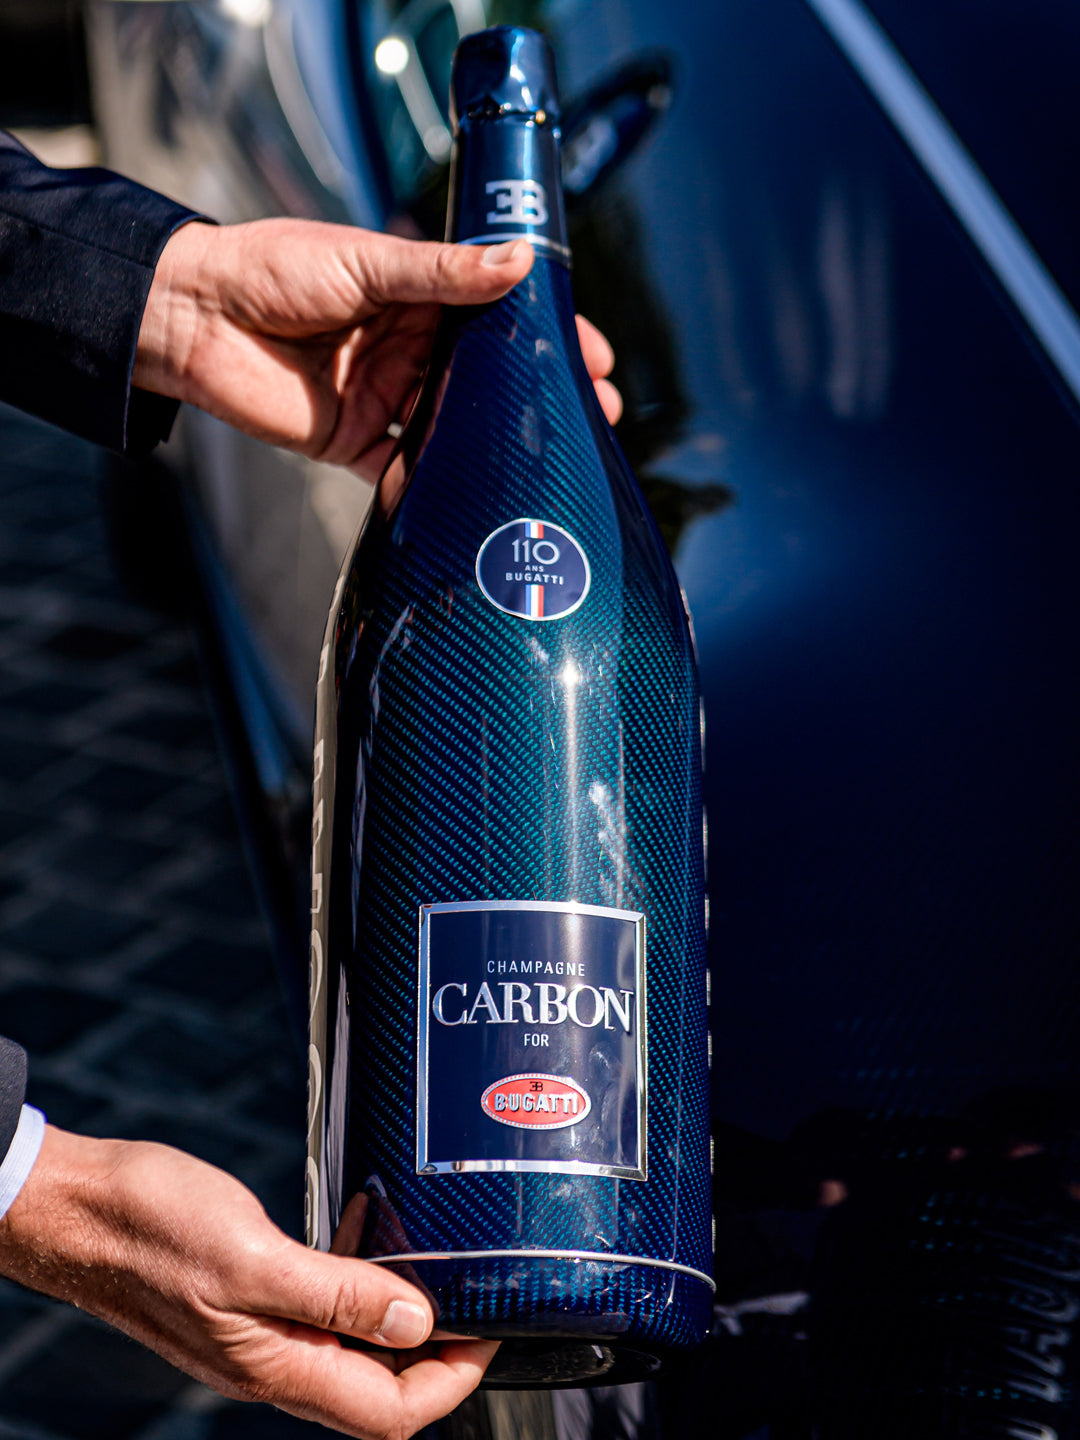 – USA Collection Champagne Carbon Bugatti